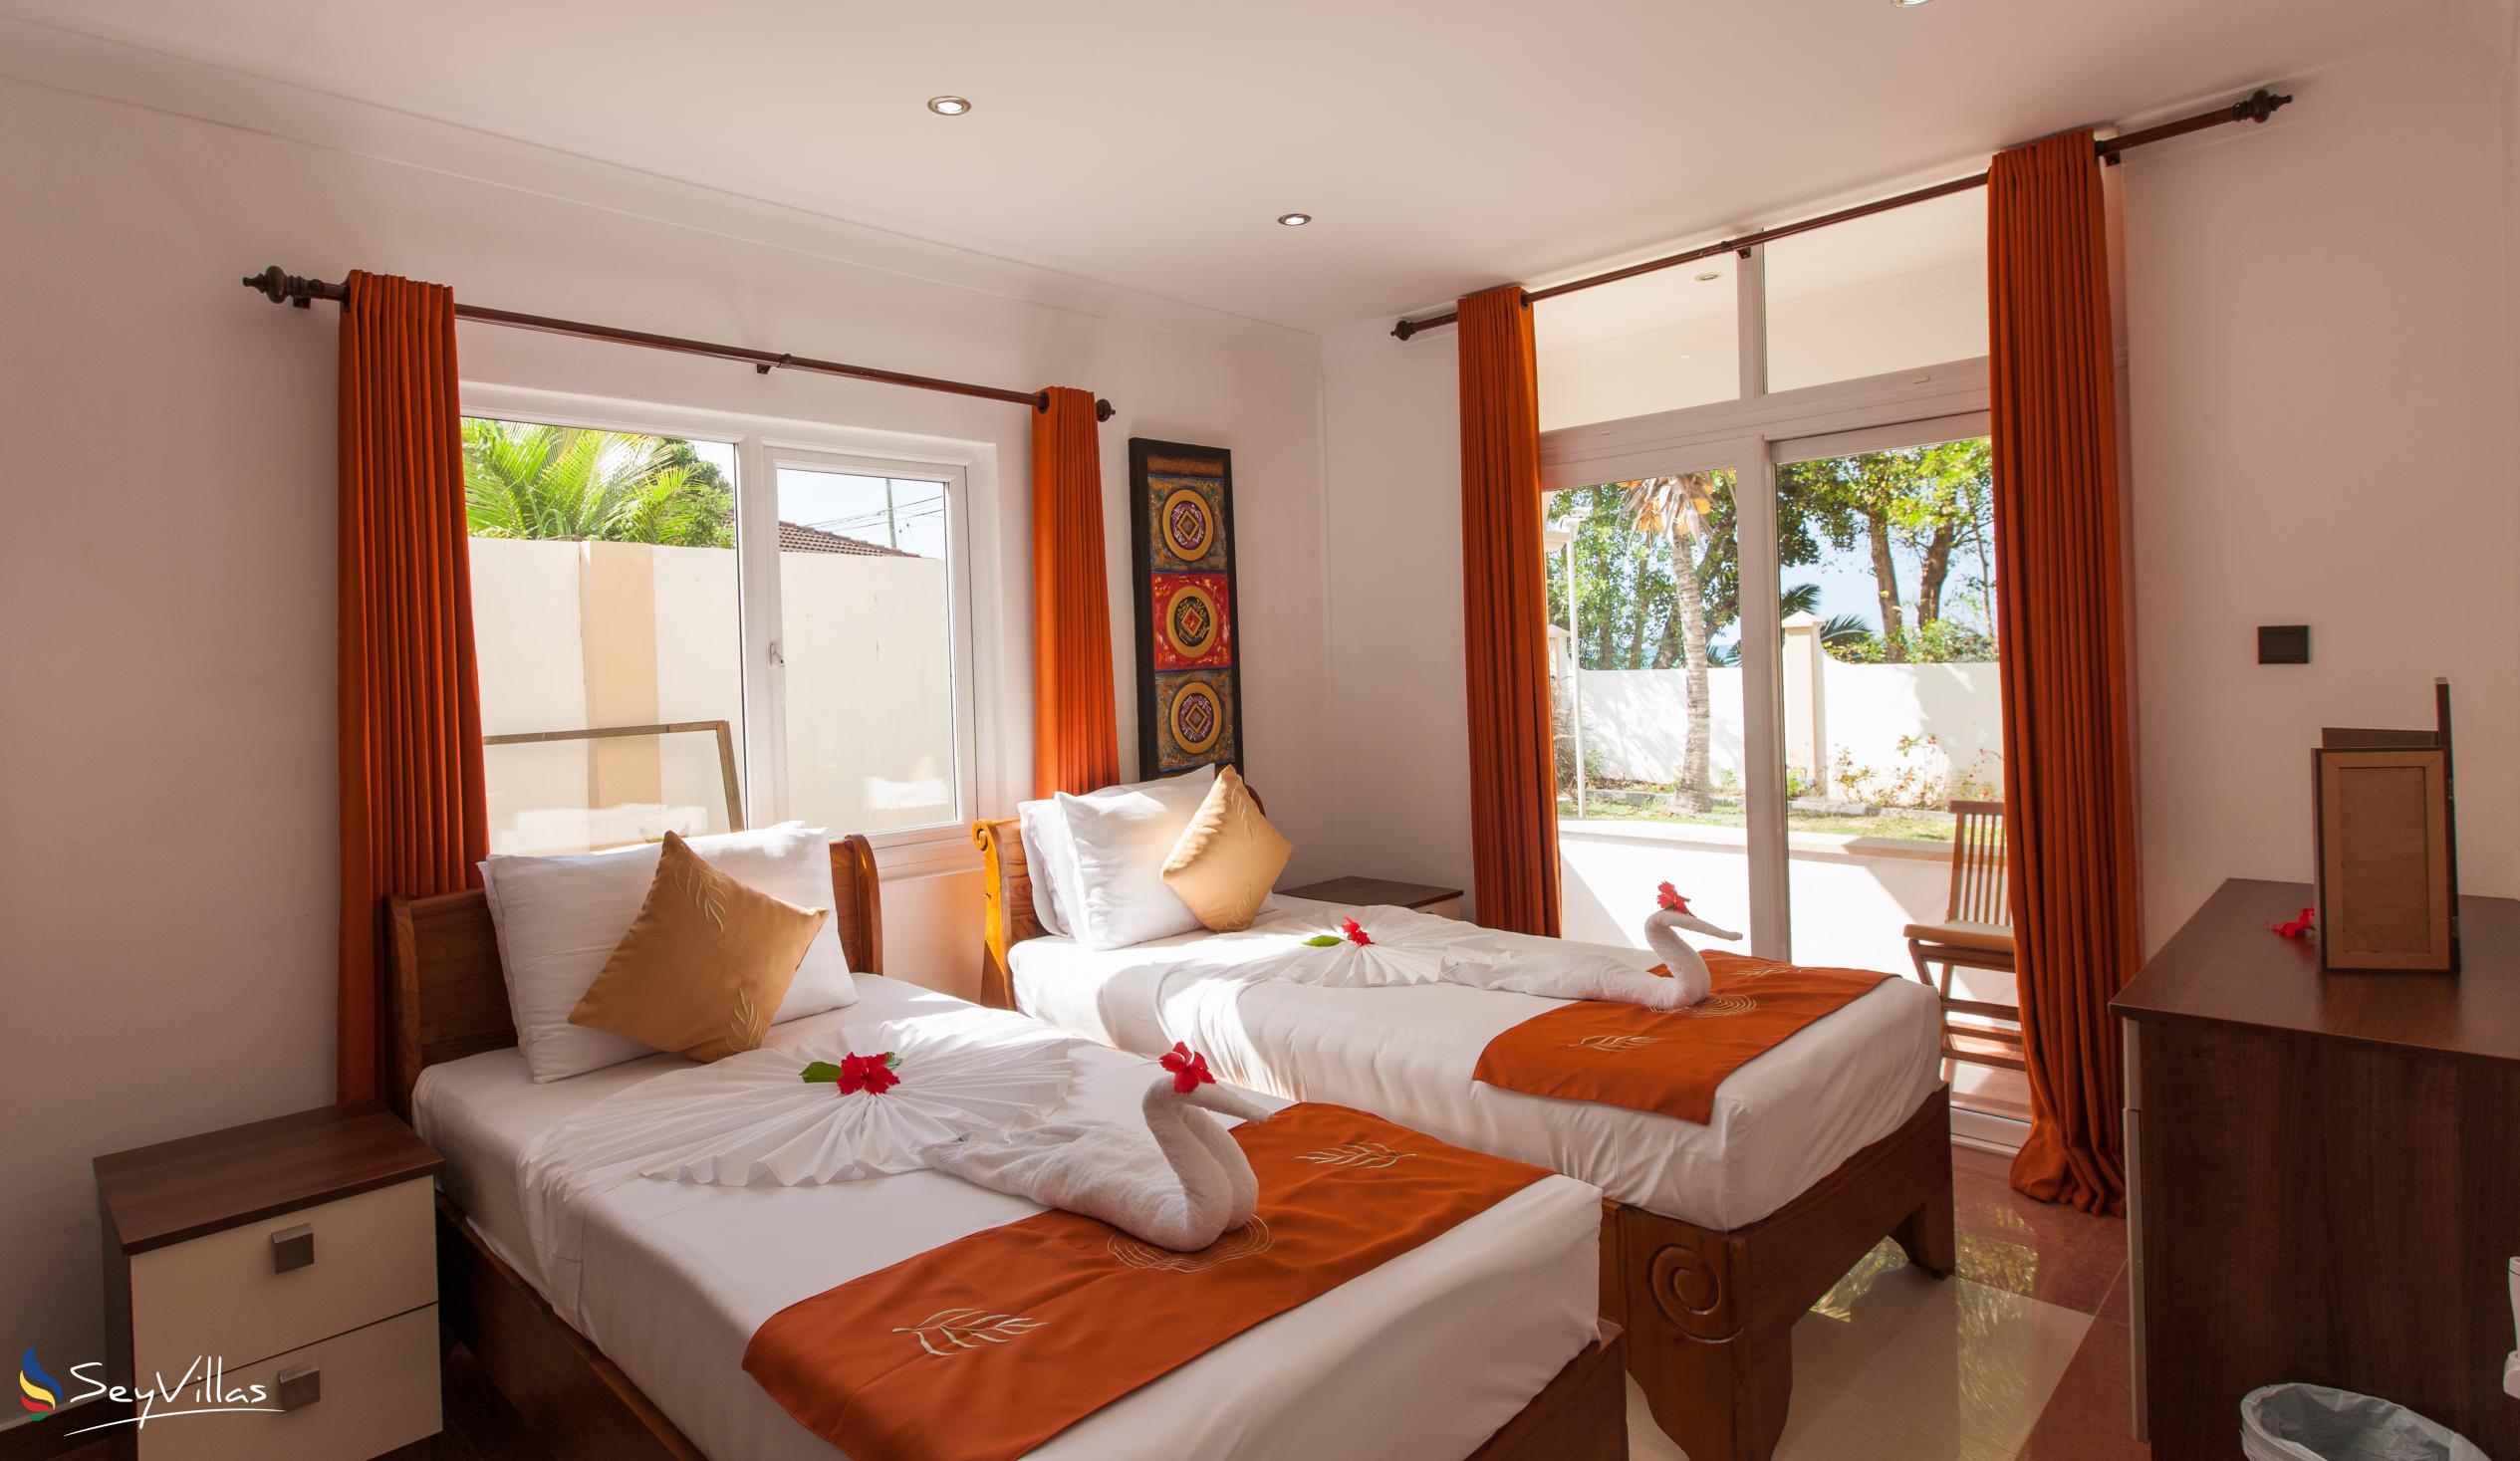 Foto 56: YASAD Luxury Beach Residence - Appartement mit 2 Schlafzimmern - Praslin (Seychellen)